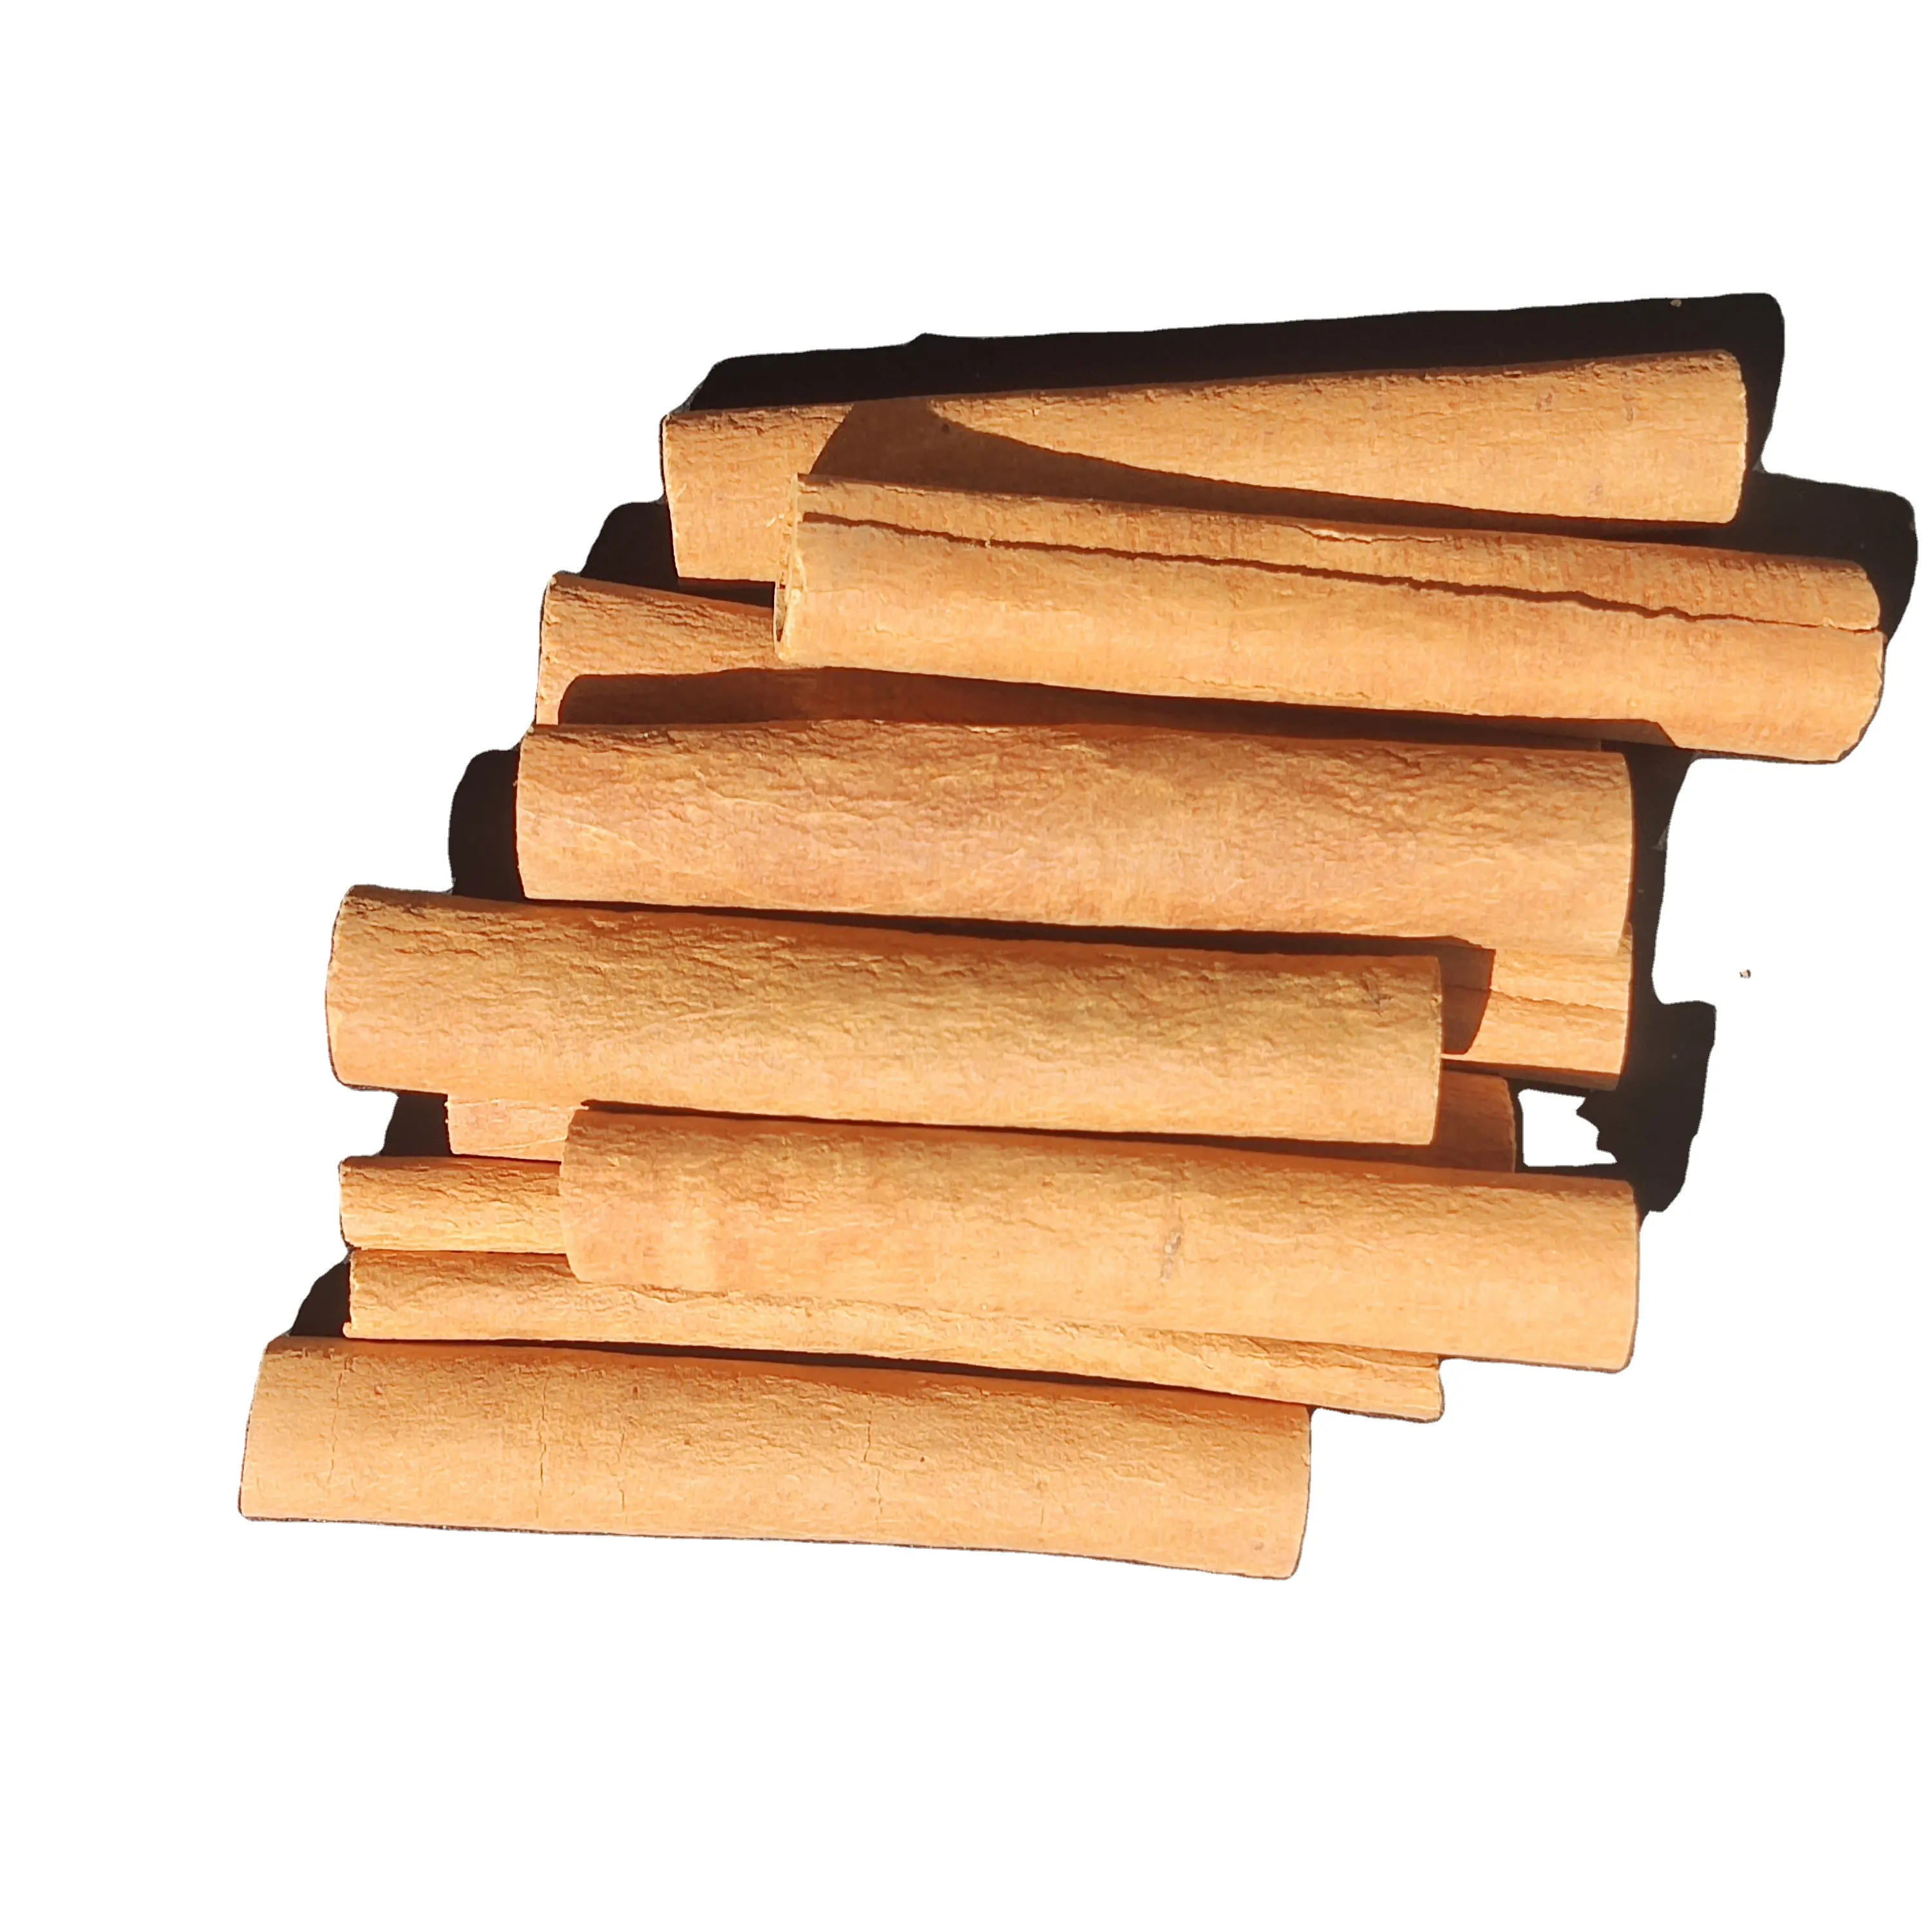 السجائر الكاسيا فيتنامية عالية الجودة بسعر الجملة من المصنع (سيدة كوينسي واتساب: +84 858080598)